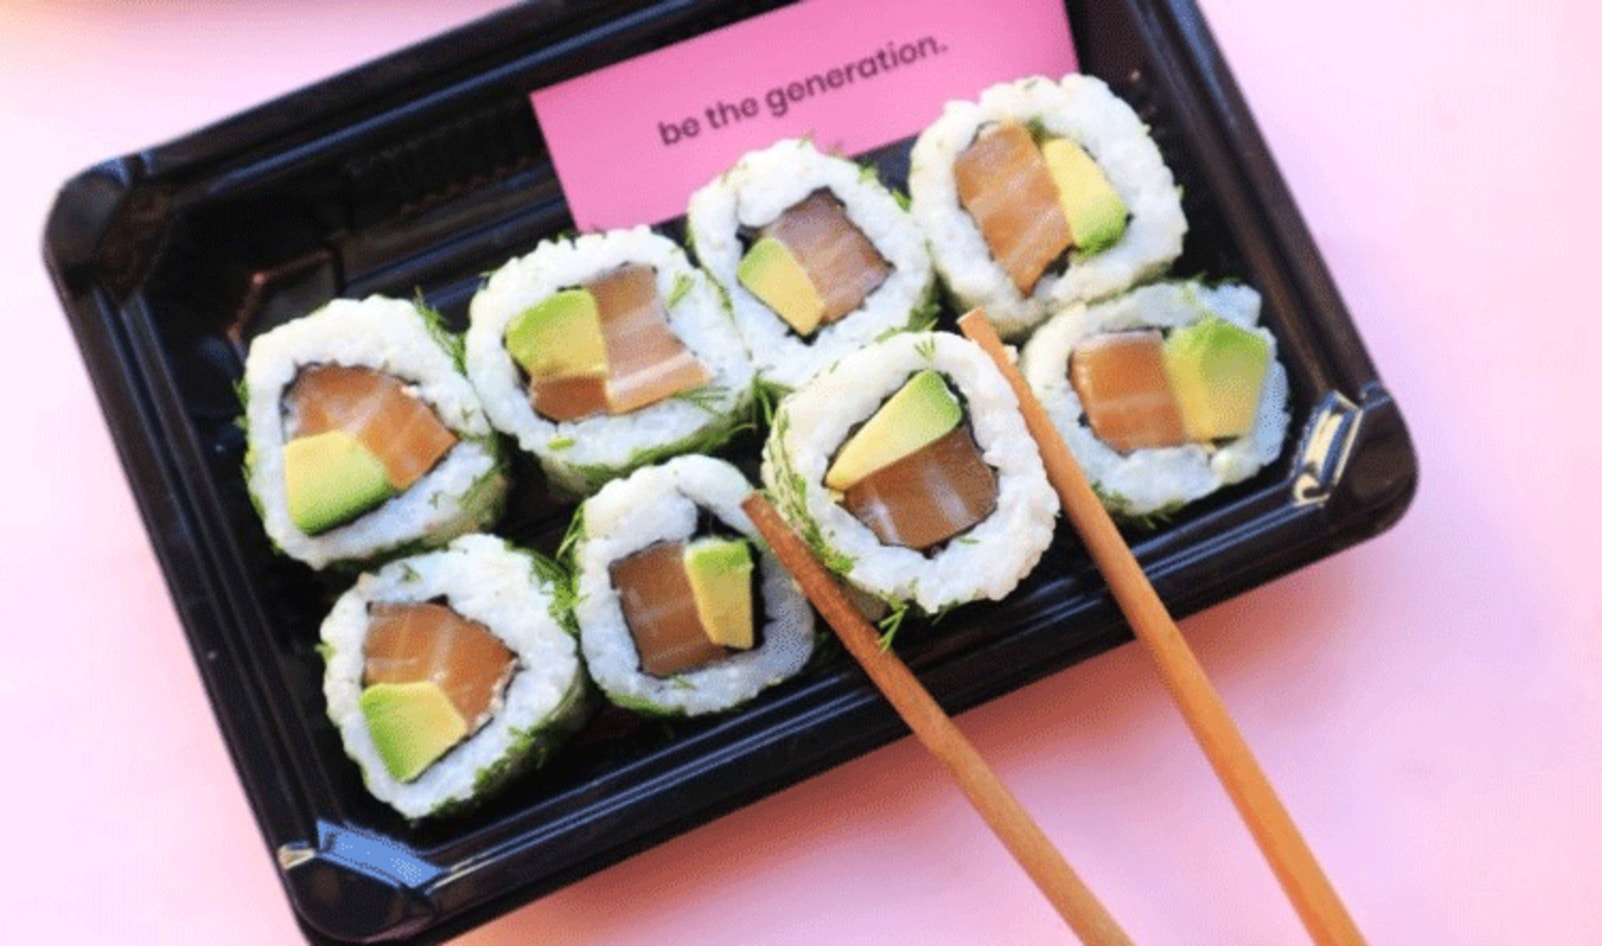 “Rebel” Sushi Company Debuts Game-Changing Vegan Salmon